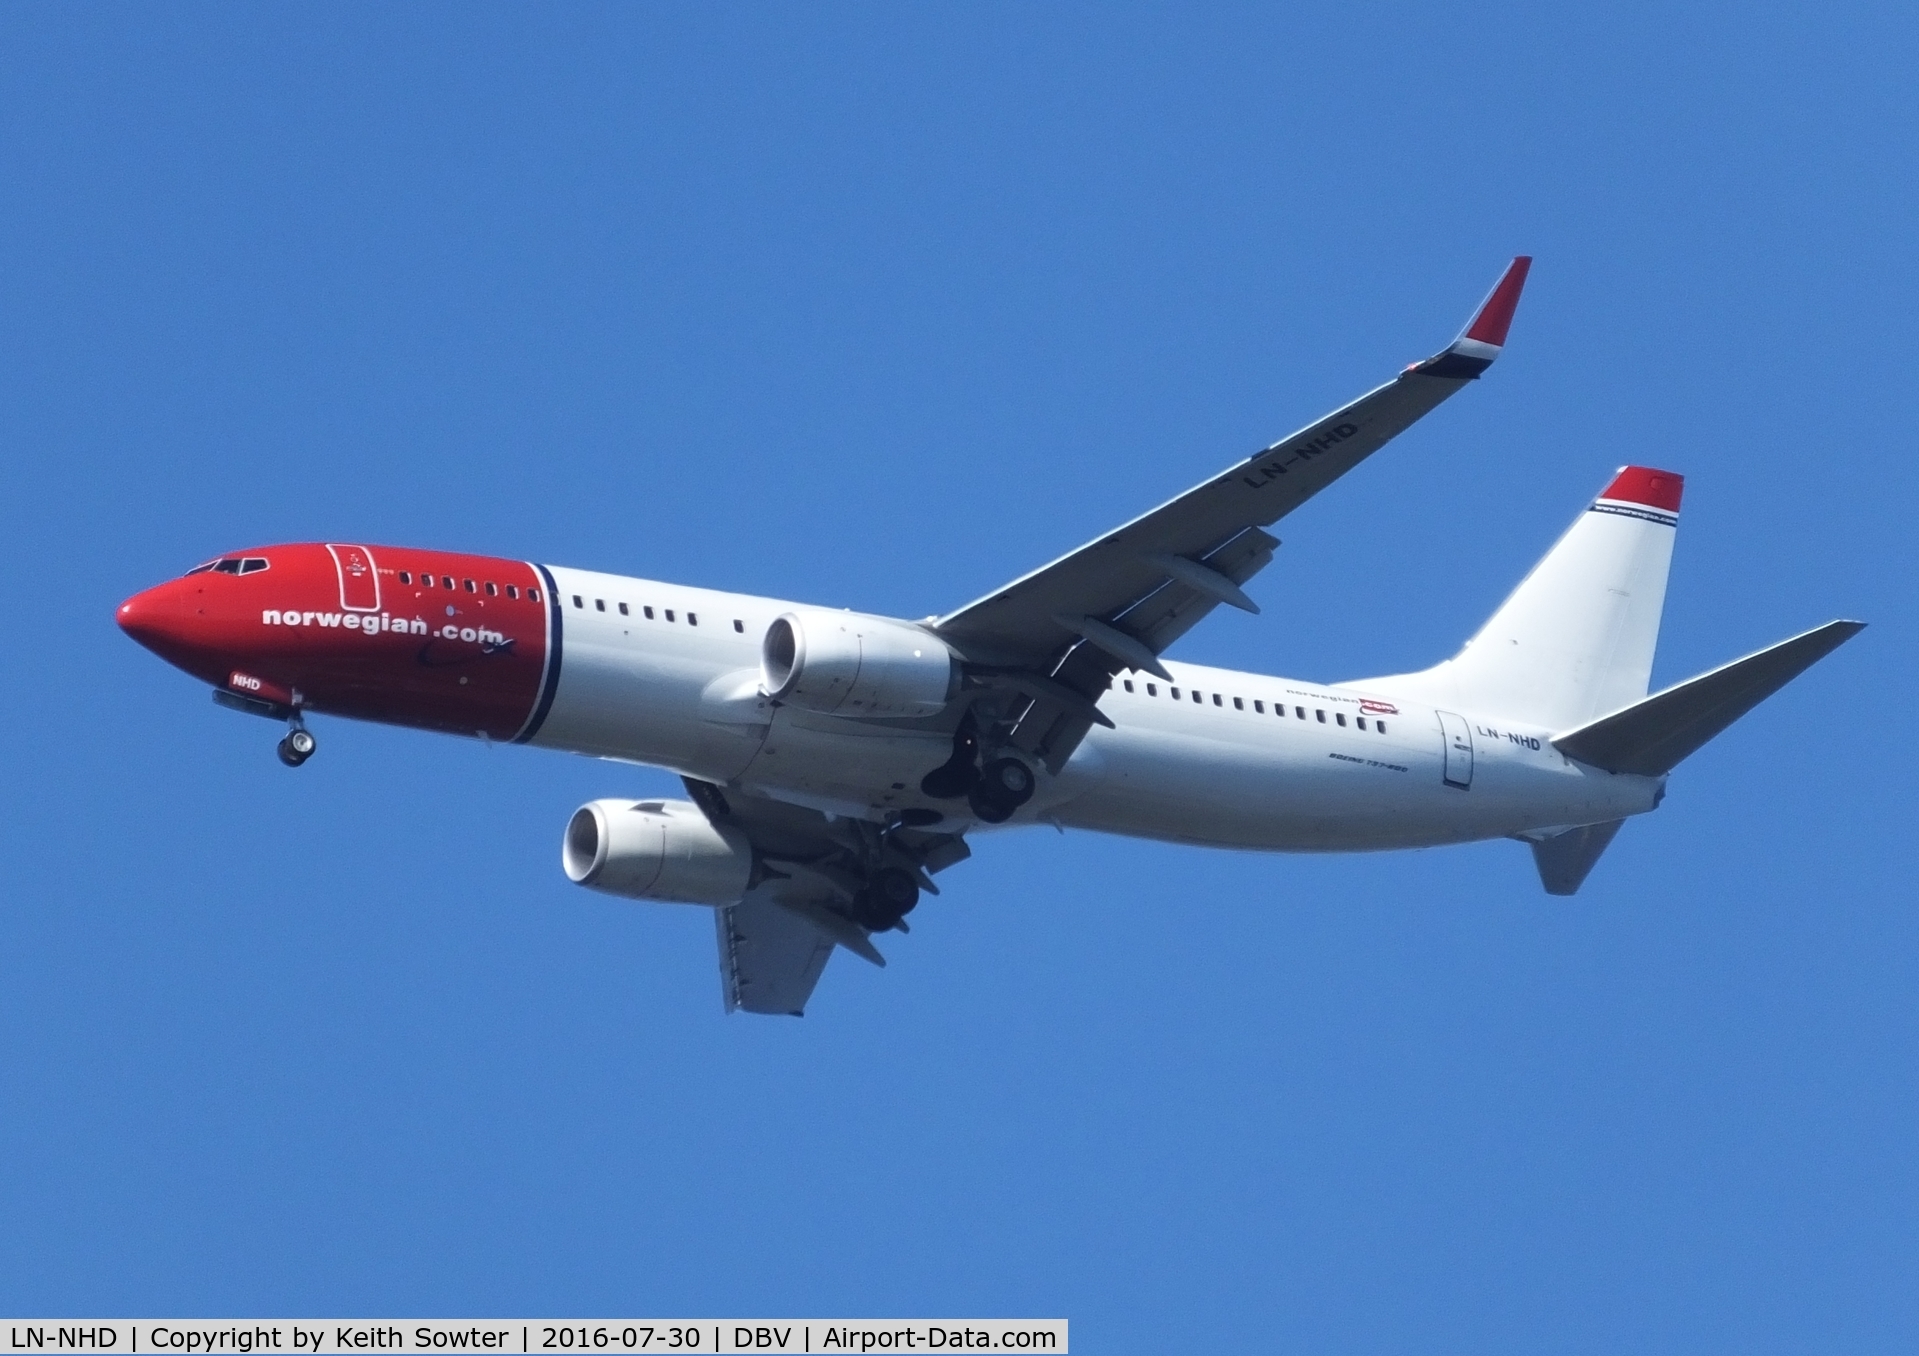 LN-NHD, 2015 Boeing 737-8JP C/N 41131, Short Finals to land at Dubrovnik